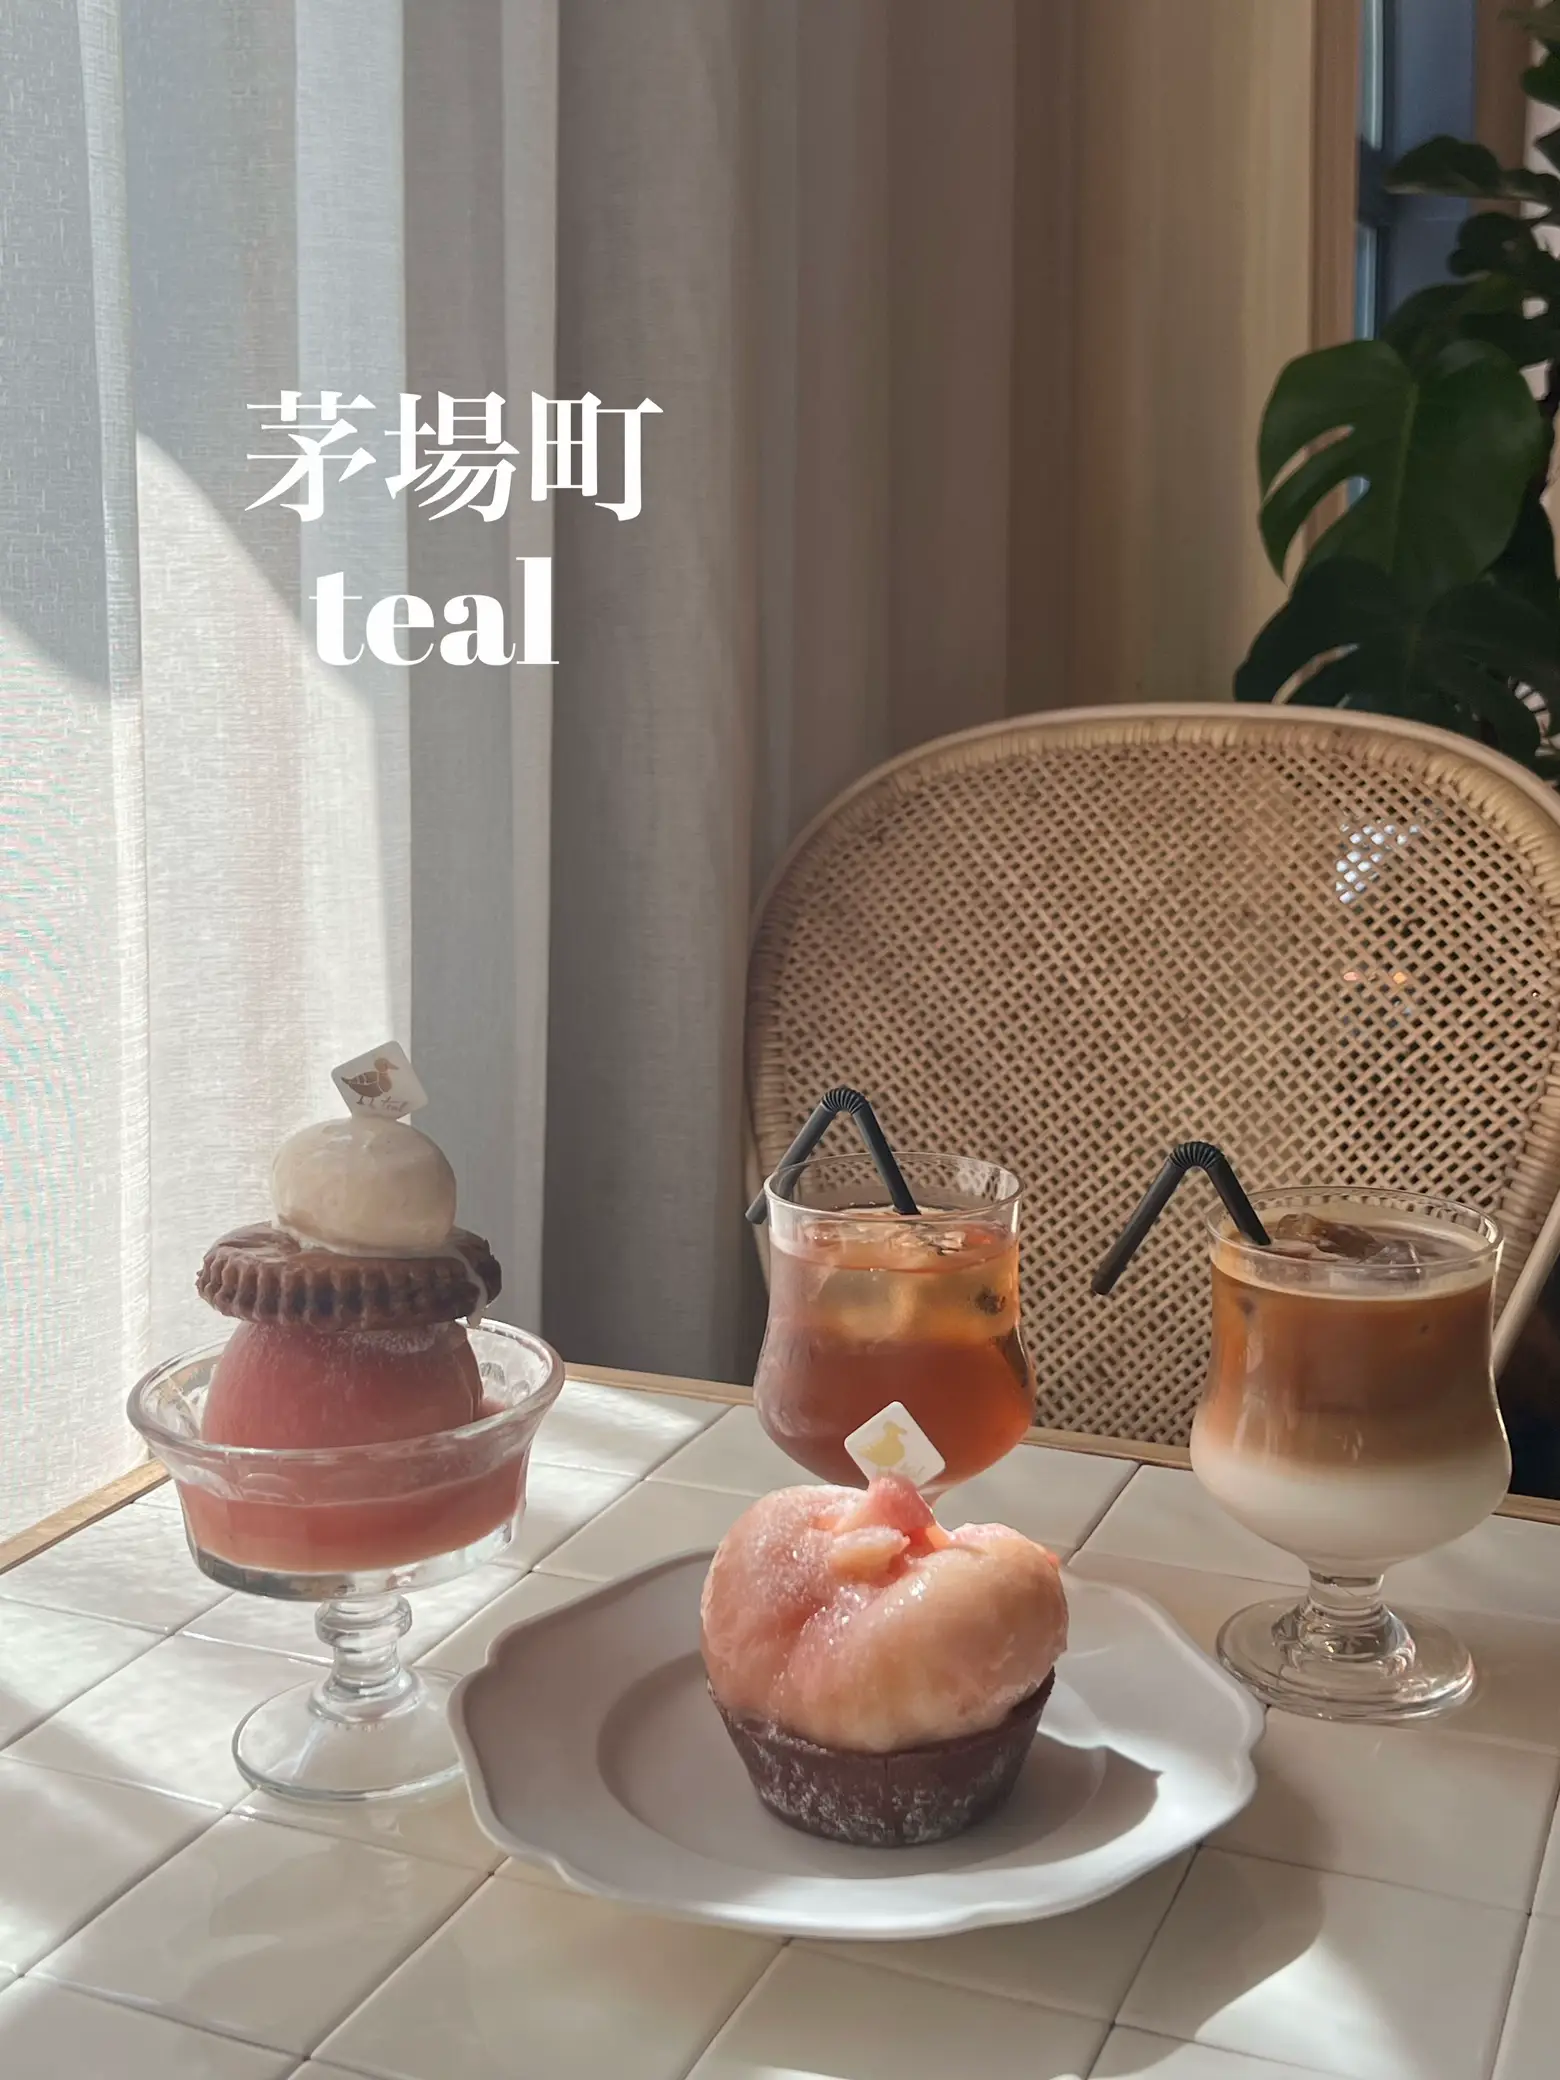 オープン30分で売り切れるほど人気な桃タルト🍑 | まい☺︎東京カフェ